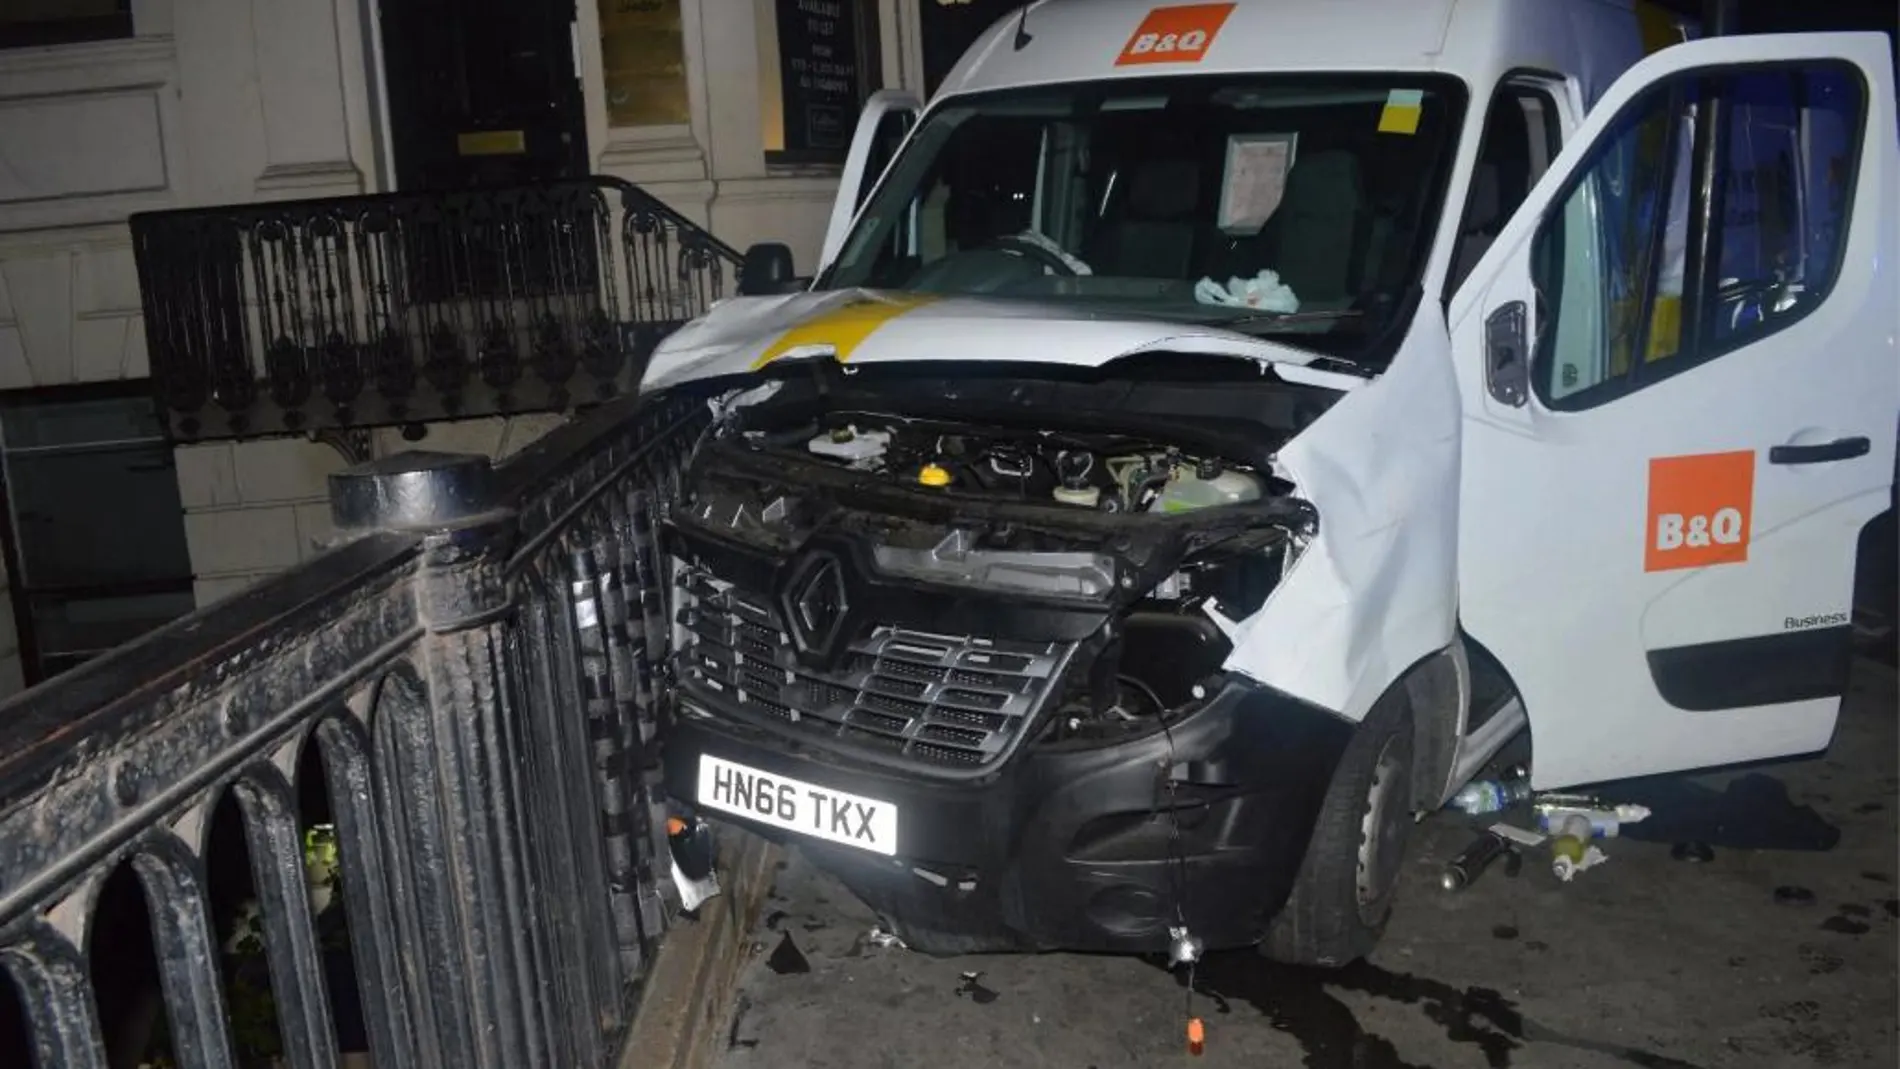 Imagen de la furgoneta utilizada por los terroristas en el atentando del Puente de Londres el pasado 3 de junio